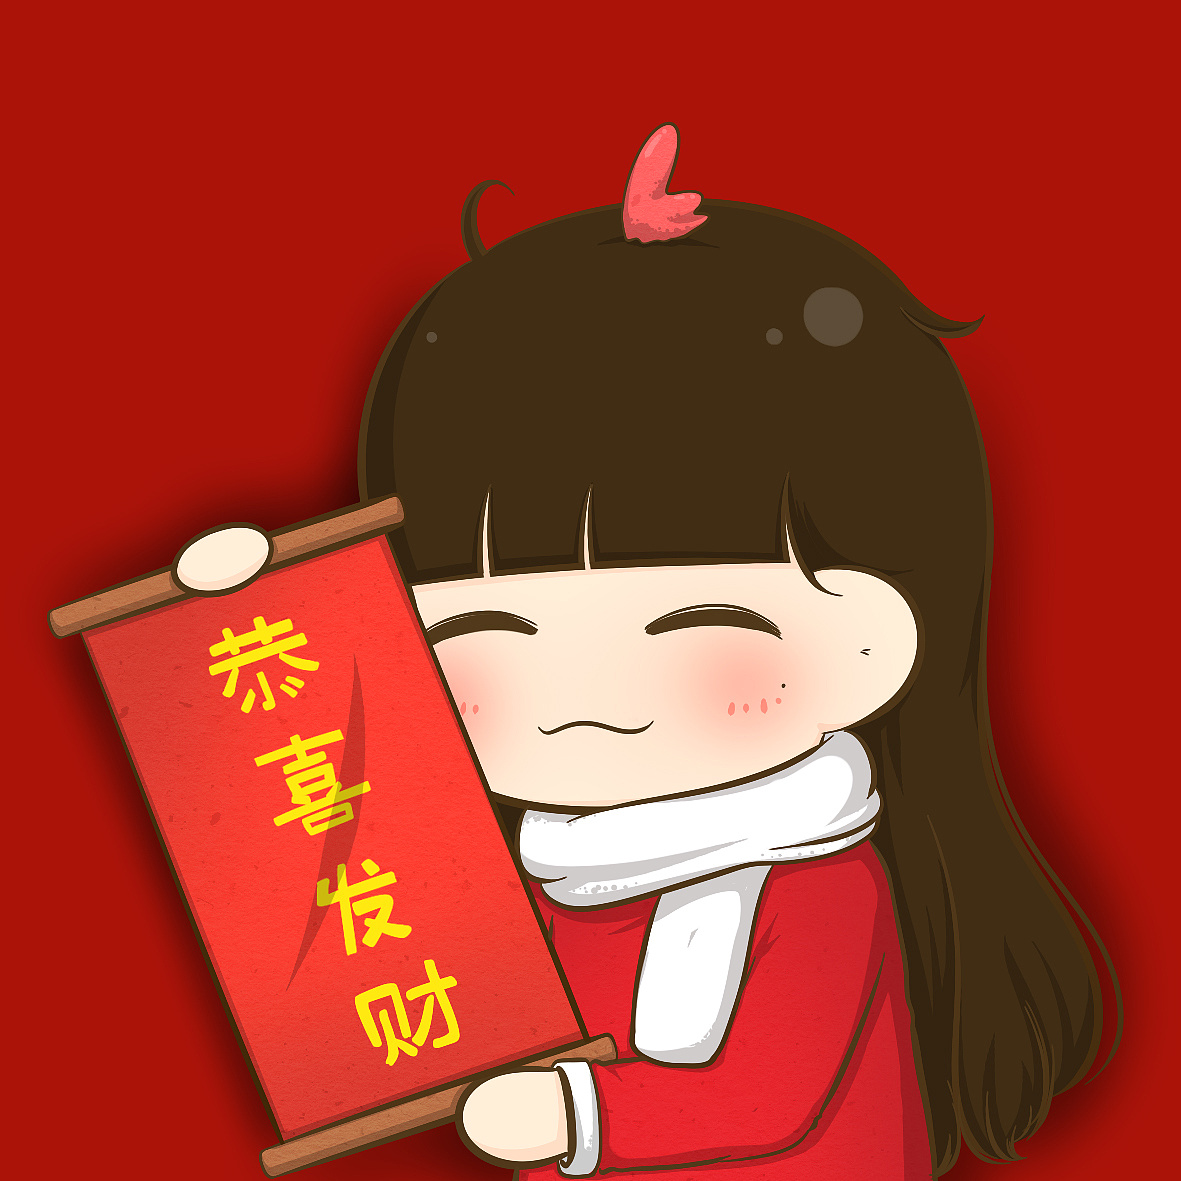 红黄色舞狮卡通春节节日中文微信头像 - 模板 - Canva可画